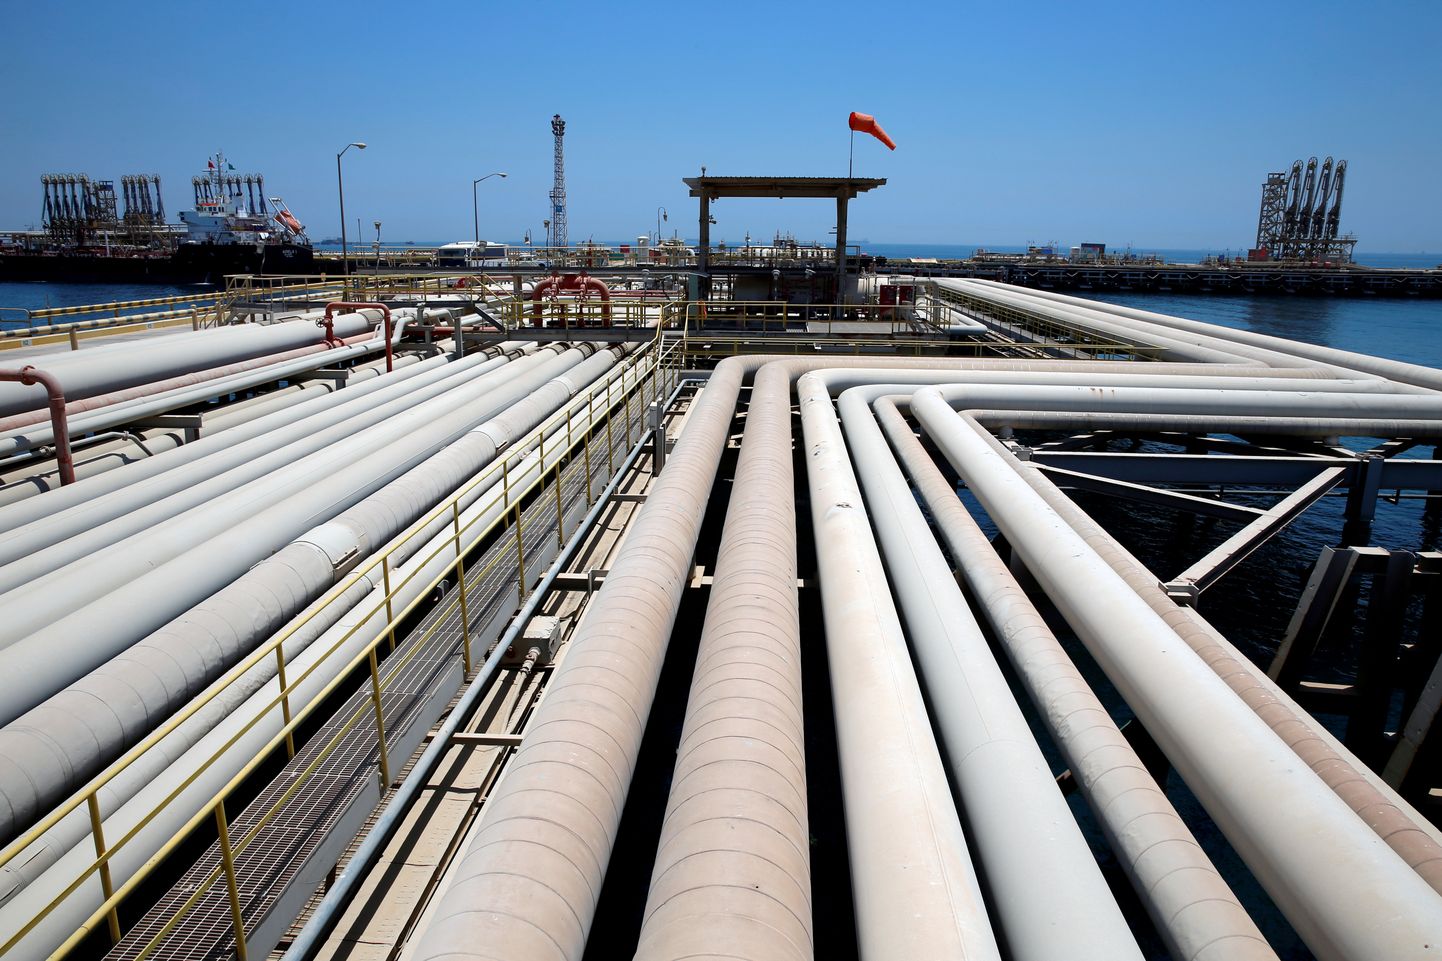 Naftatankeri laadimine Saudi Araabia naftaterminalis.